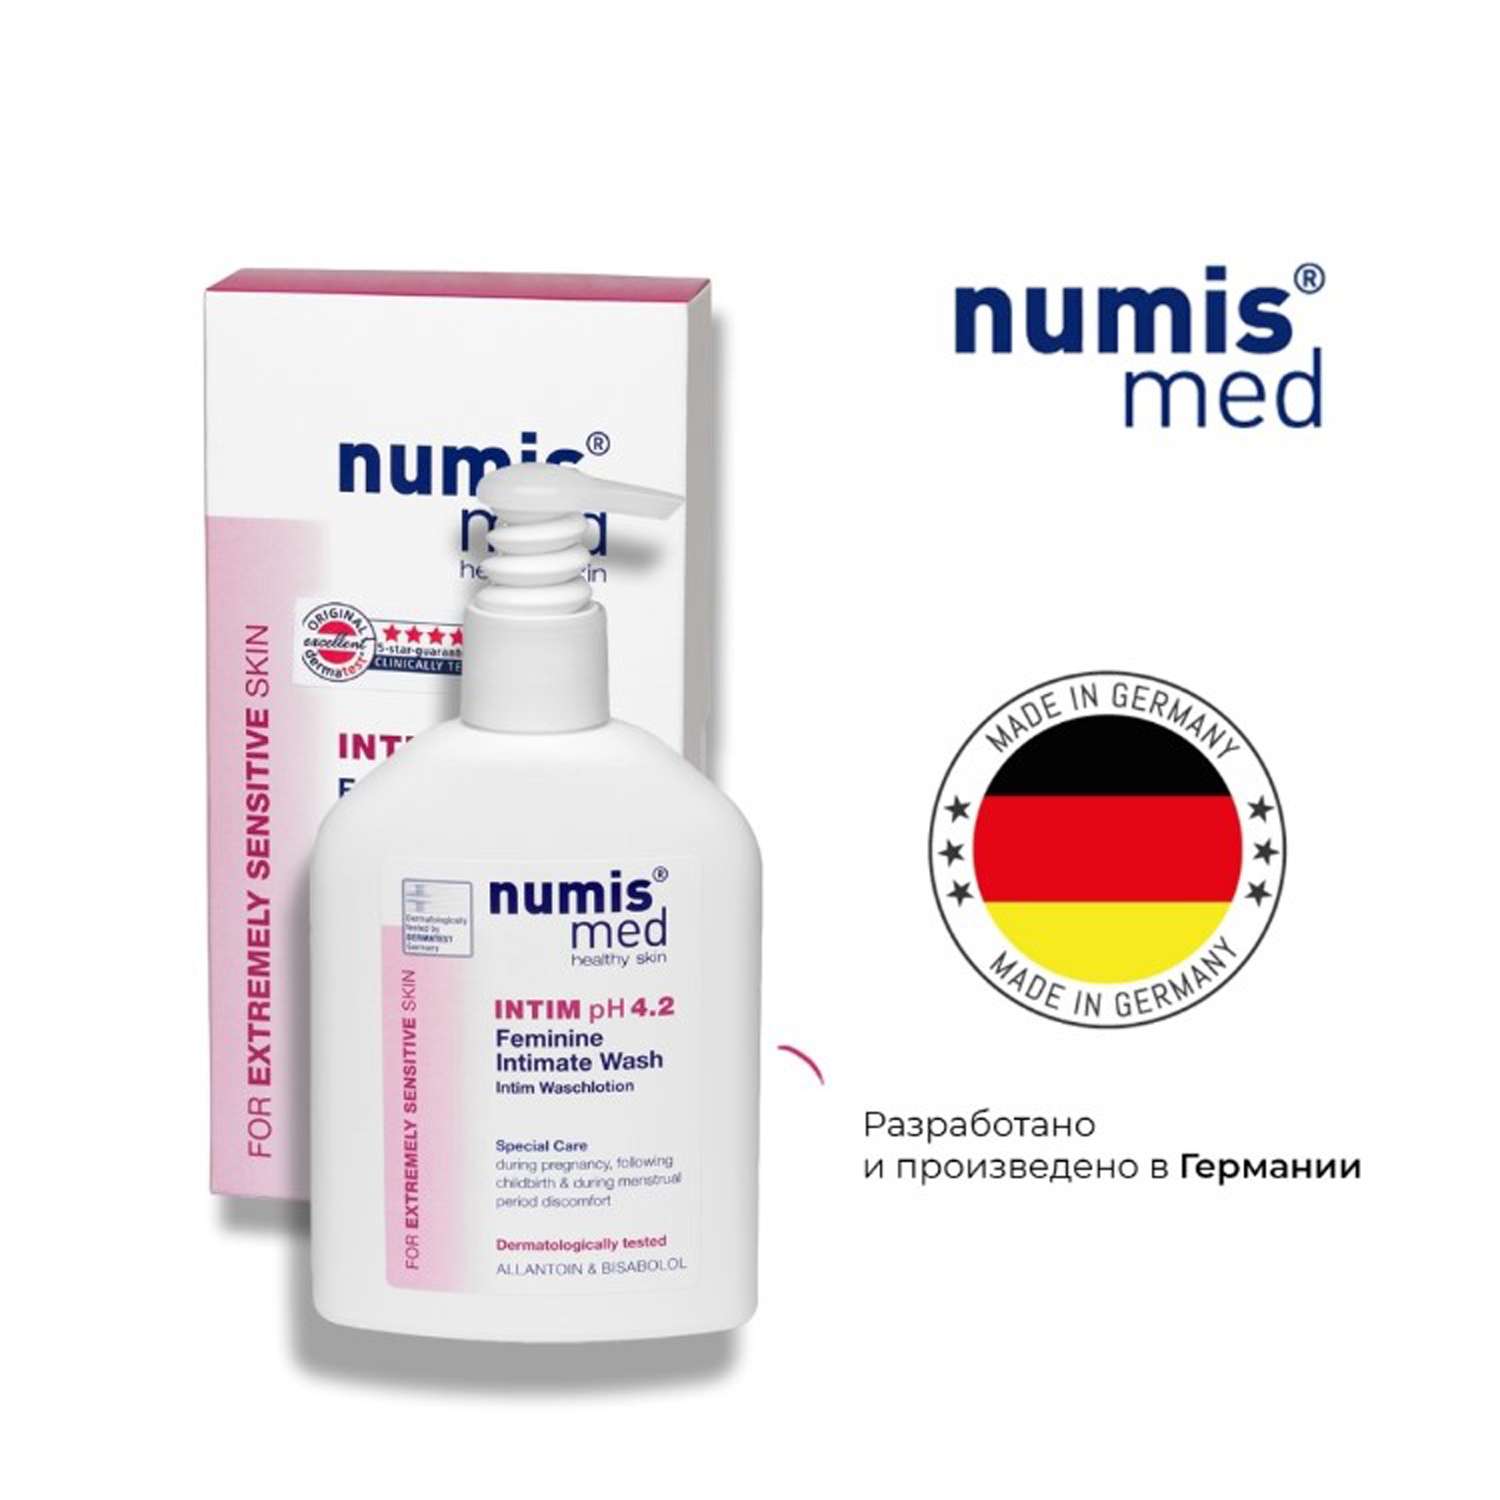 Гель для интимной гигиены numis® med pH 4.2 нежный уход для чувствительных участков 200 мл - фото 5